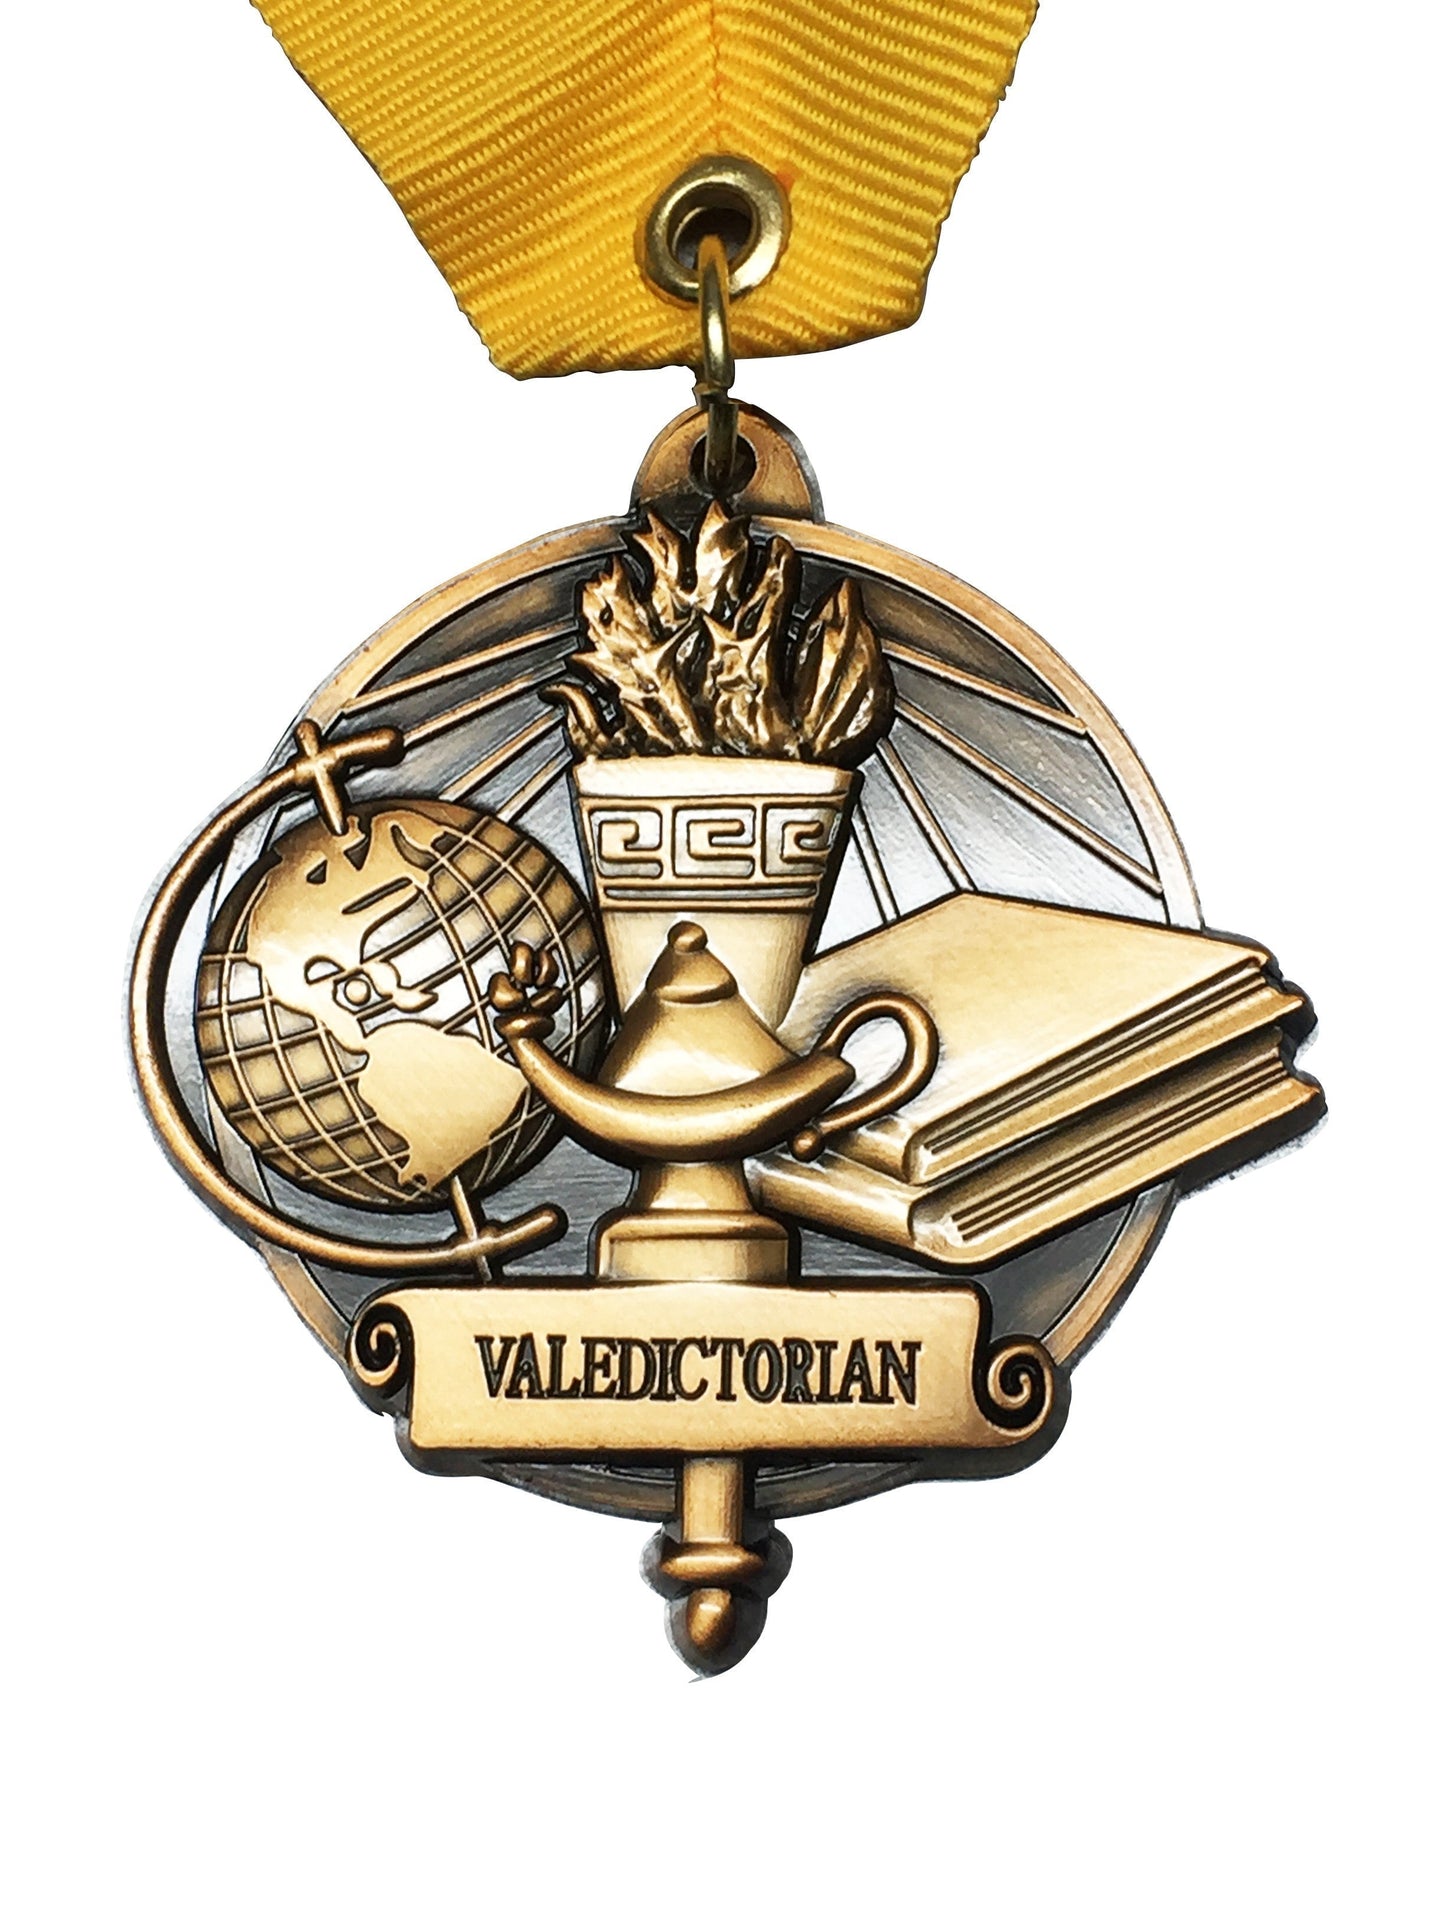 Valedictorian High School Medal